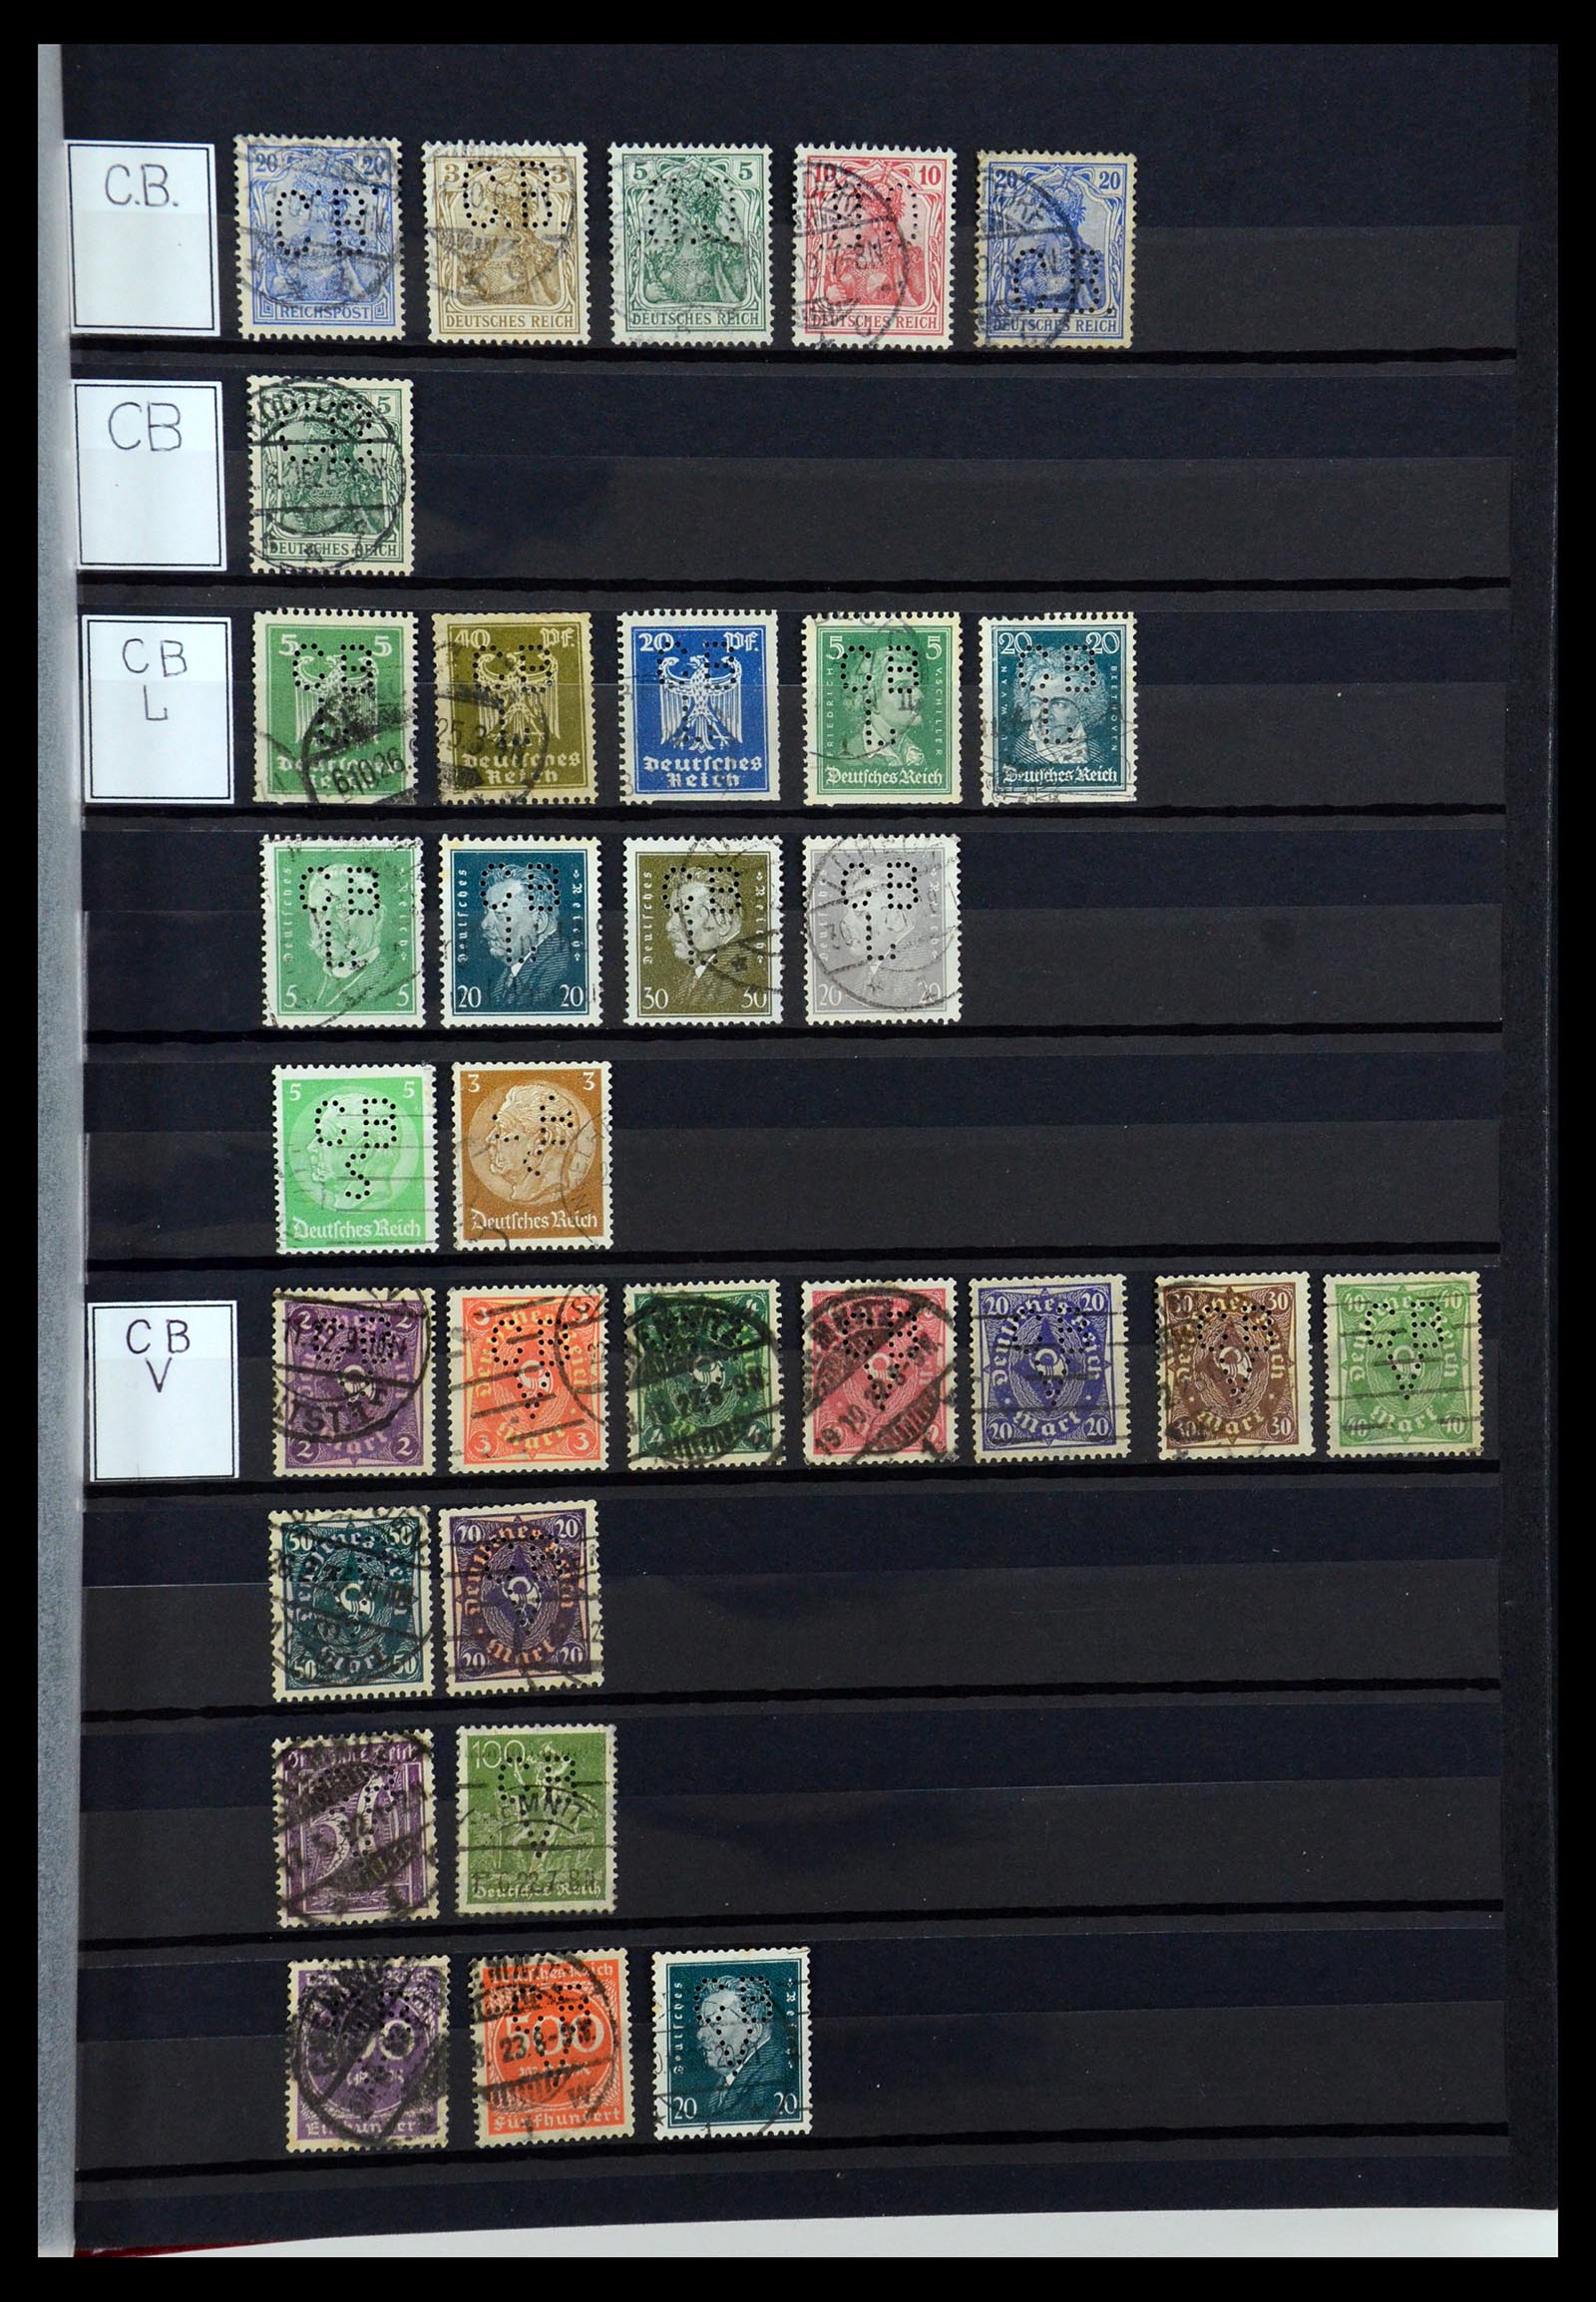 36405 059 - Stamp collection 36405 German Reich perfins 1880-1945.